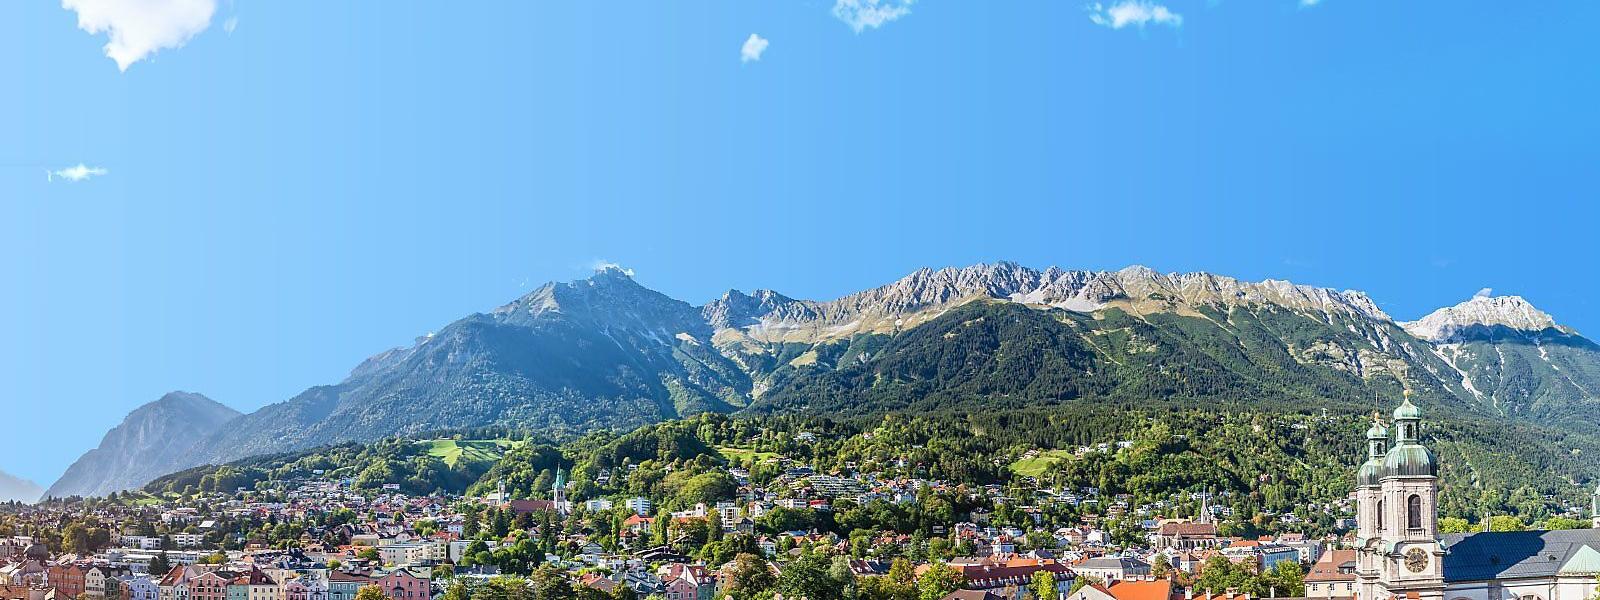 Luxus Ferienhäuser und Ferienwohnungen in Innsbruck - BELLEVUE Ferienhaus